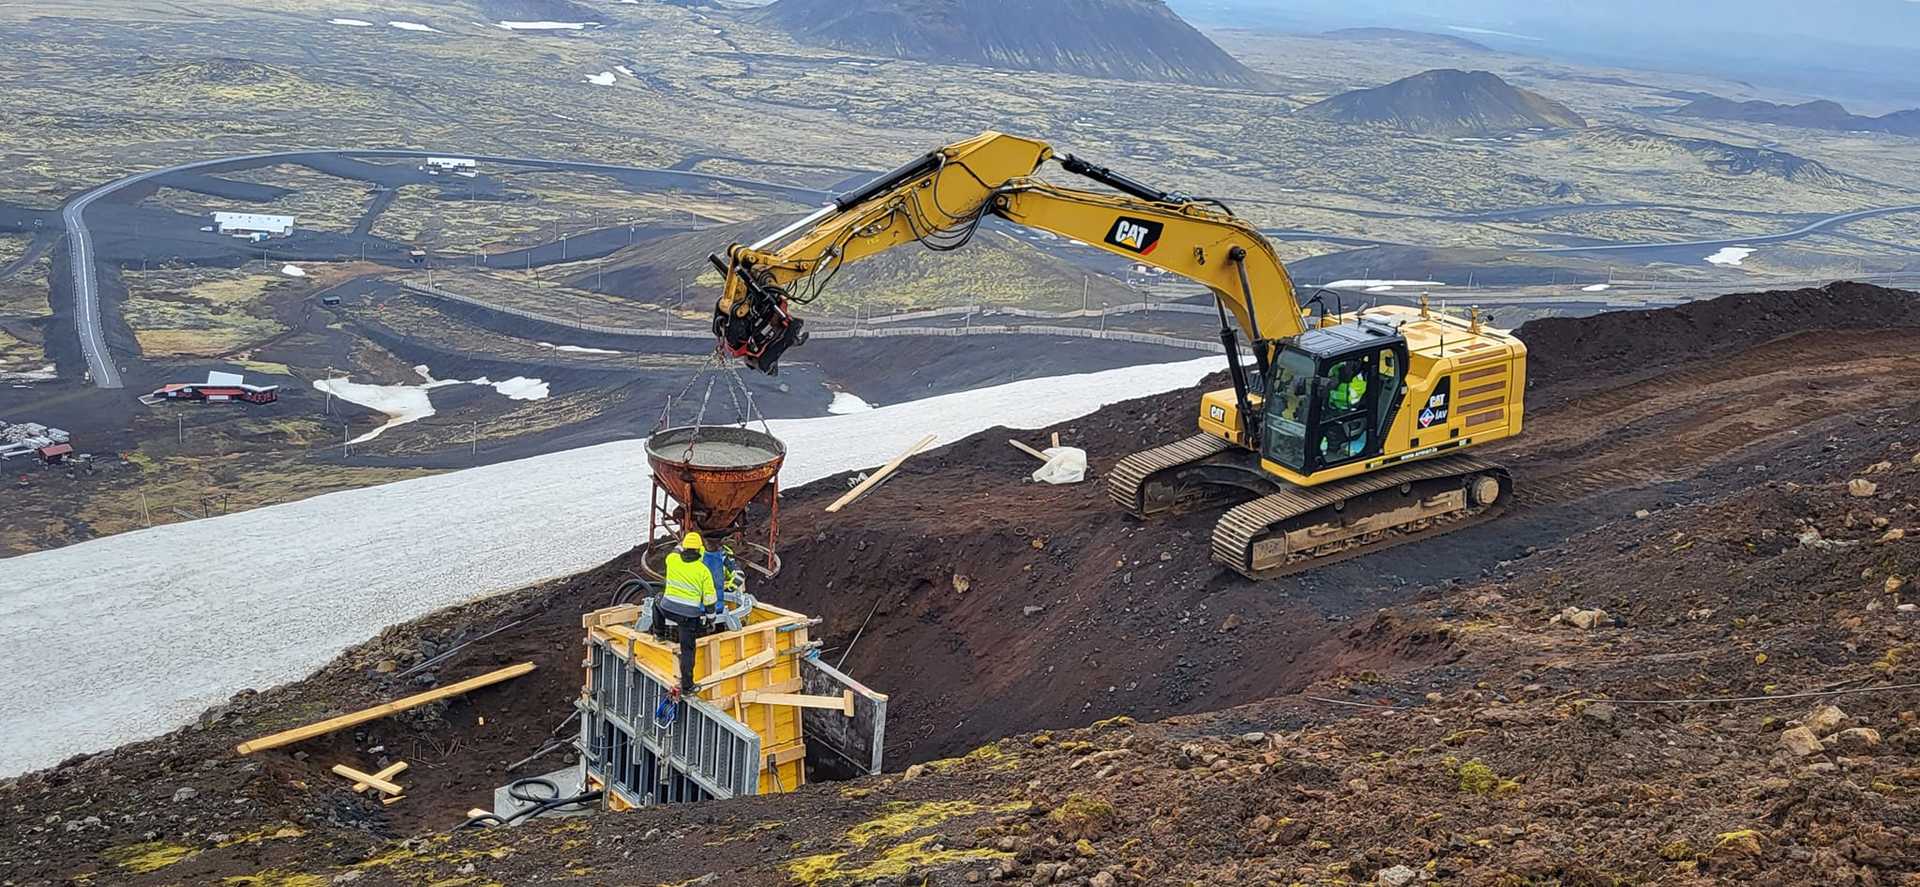 Nuevo telesilla de dos plazas en Islandia